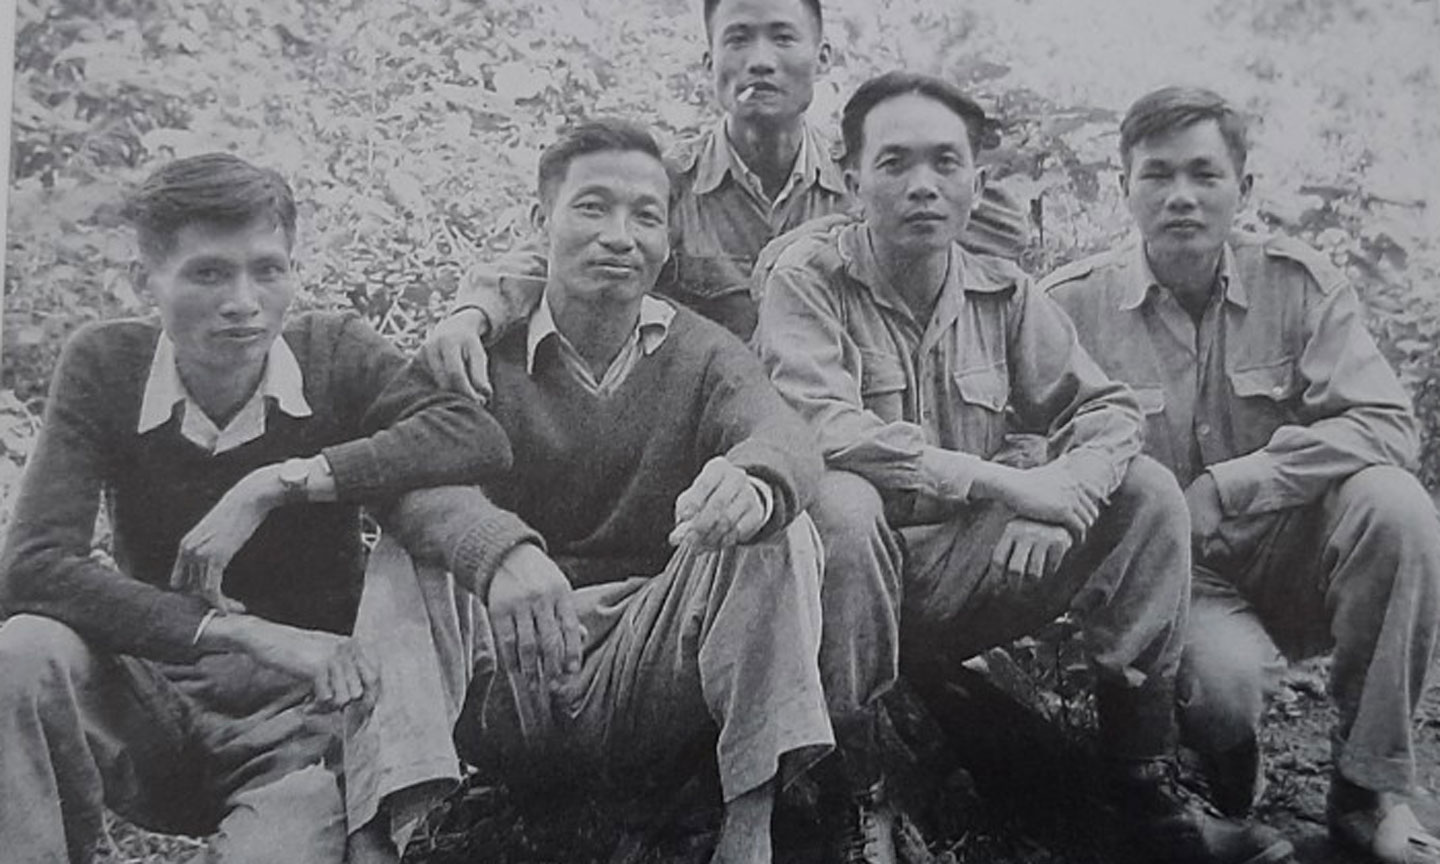 Đảng ủy Chiến dịch Biên Giới. từ trái sang: Bùi Quang Tạo, Trần Đăng Ninh, Võ Nguyên Giáp, Lê Liêm, Hoàng Văn Thái (hàng sau).